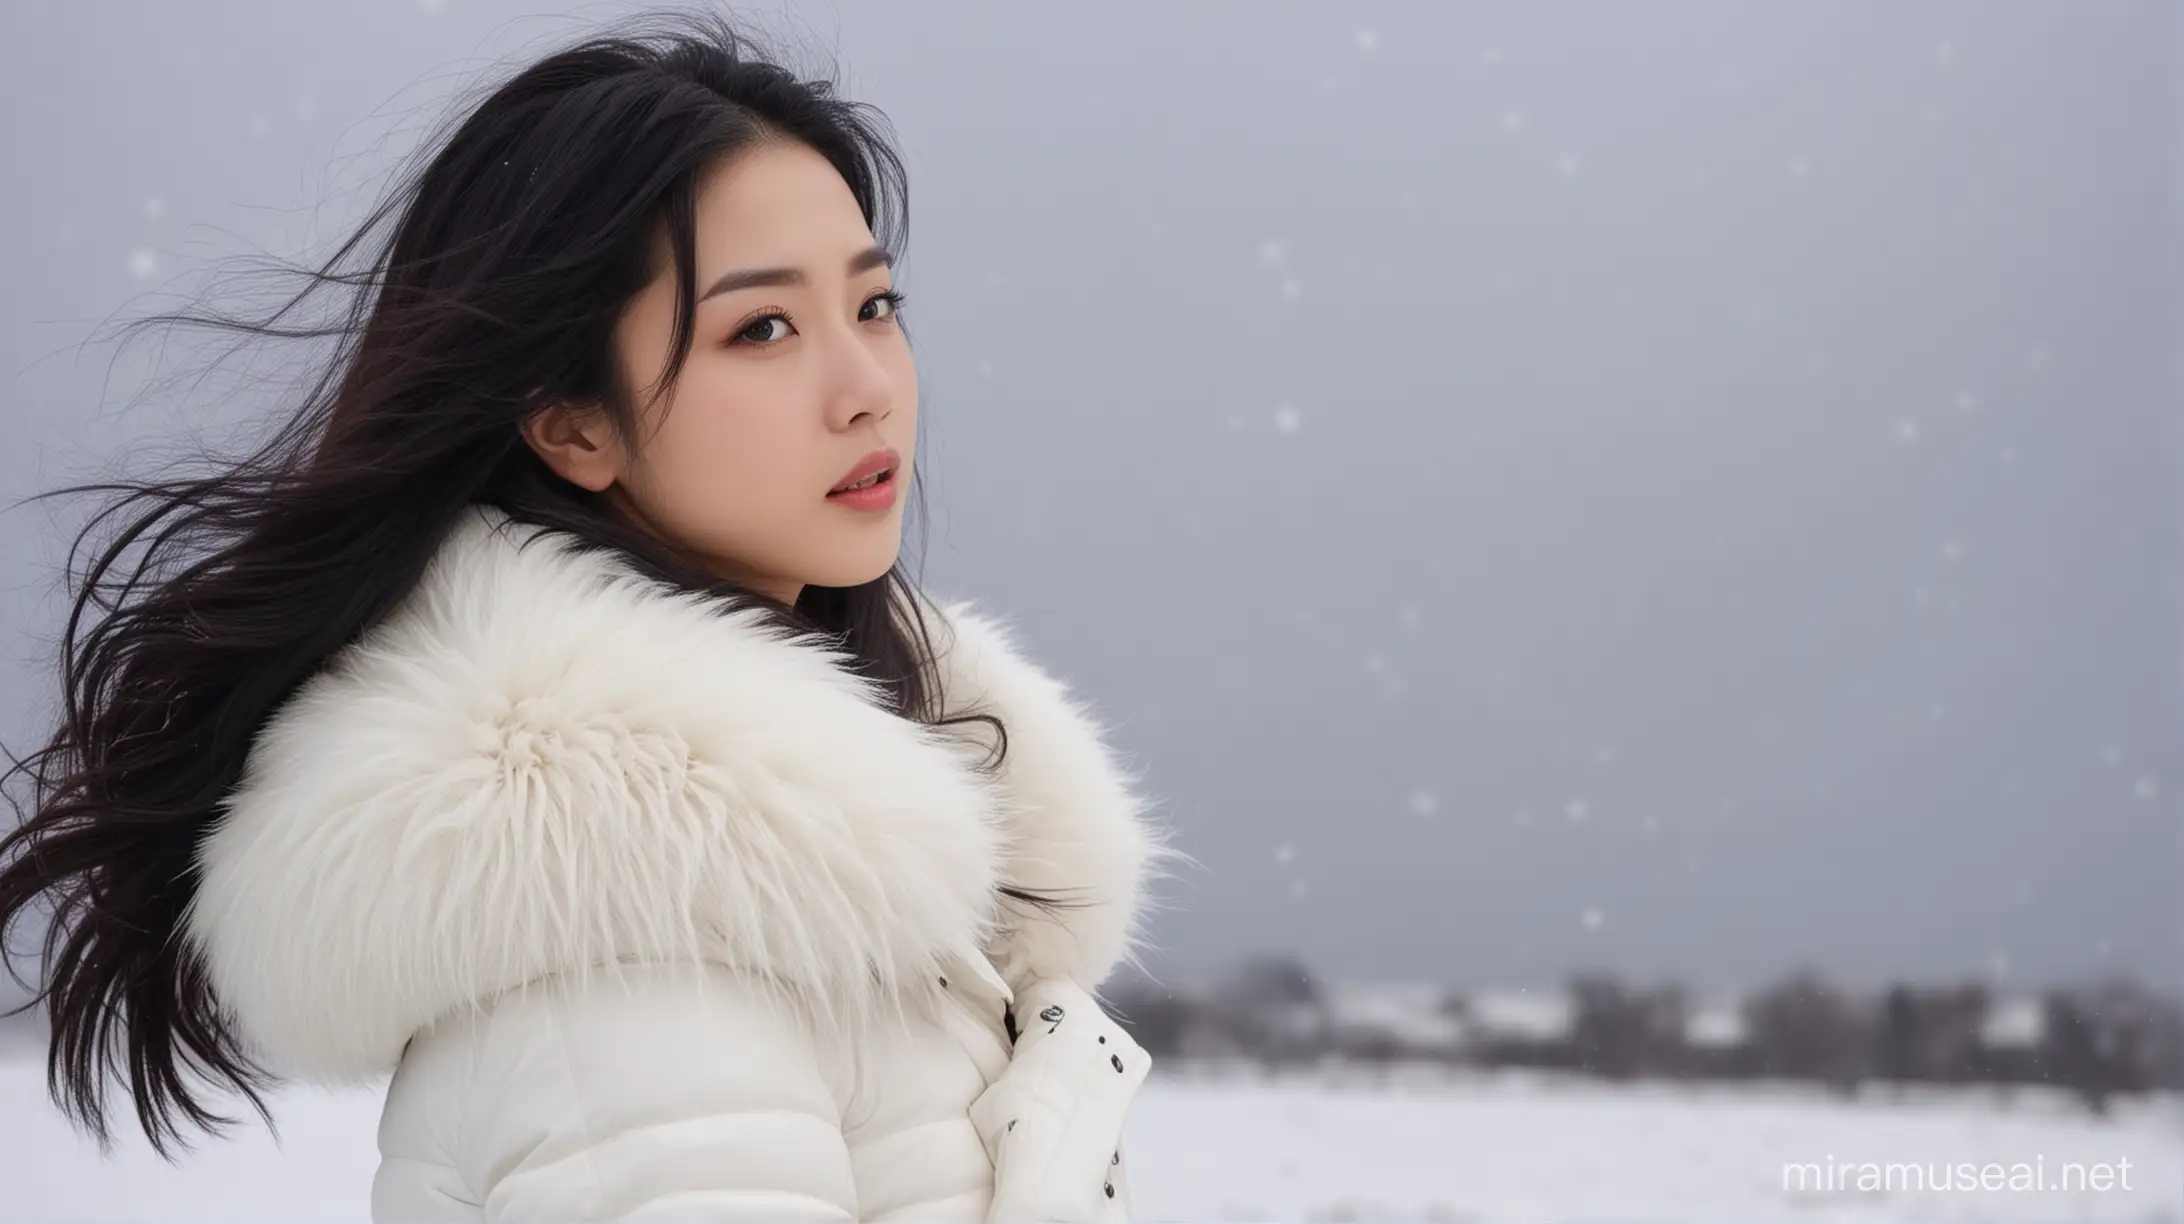 Elegant Woman in OrientalInspired Winter Wear Amidst Snowy Blizzard